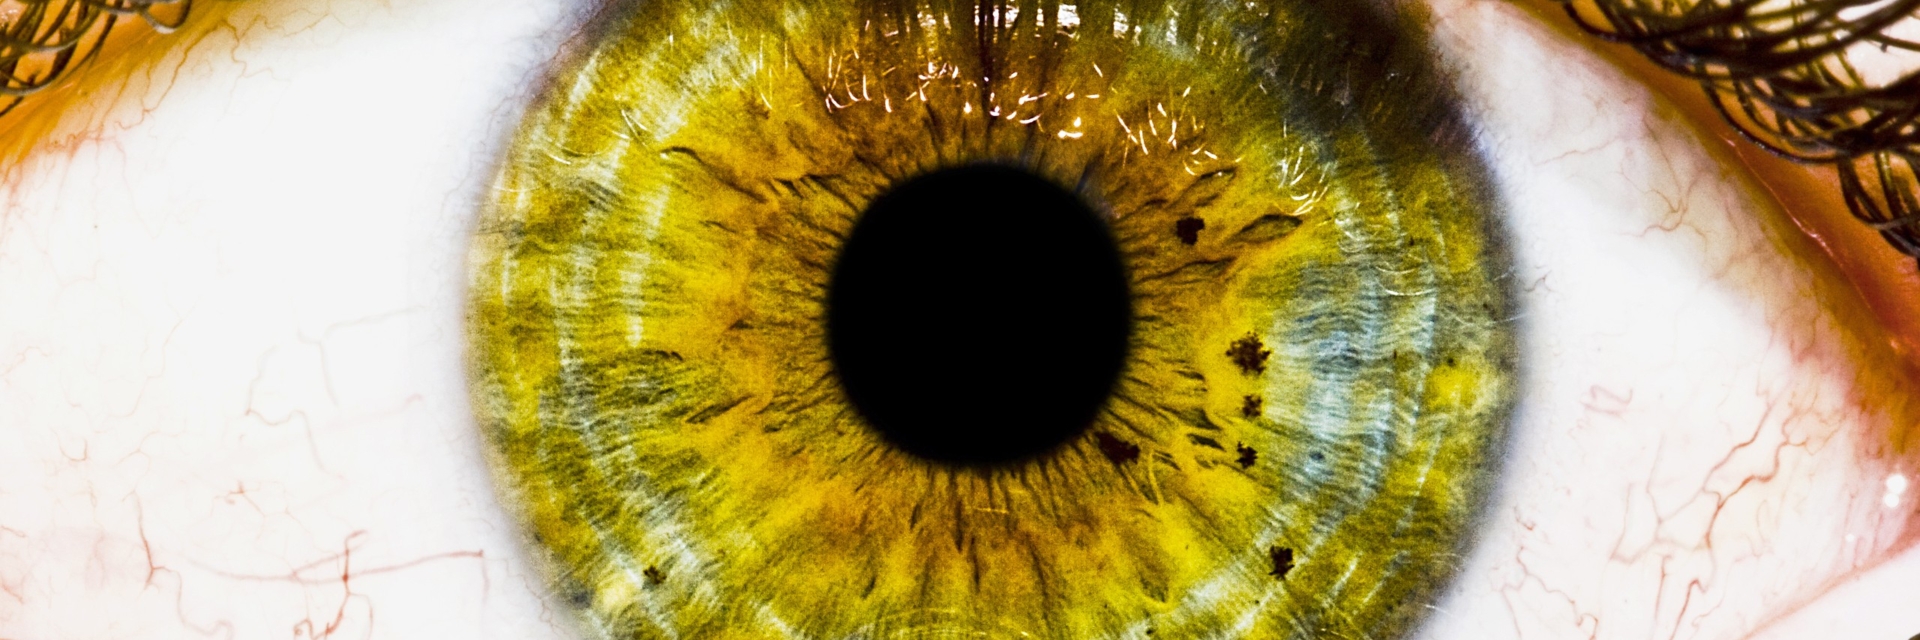 Желтый глаз 13. Зрачок глаза PNG. Коричневые ресницы на глазах.